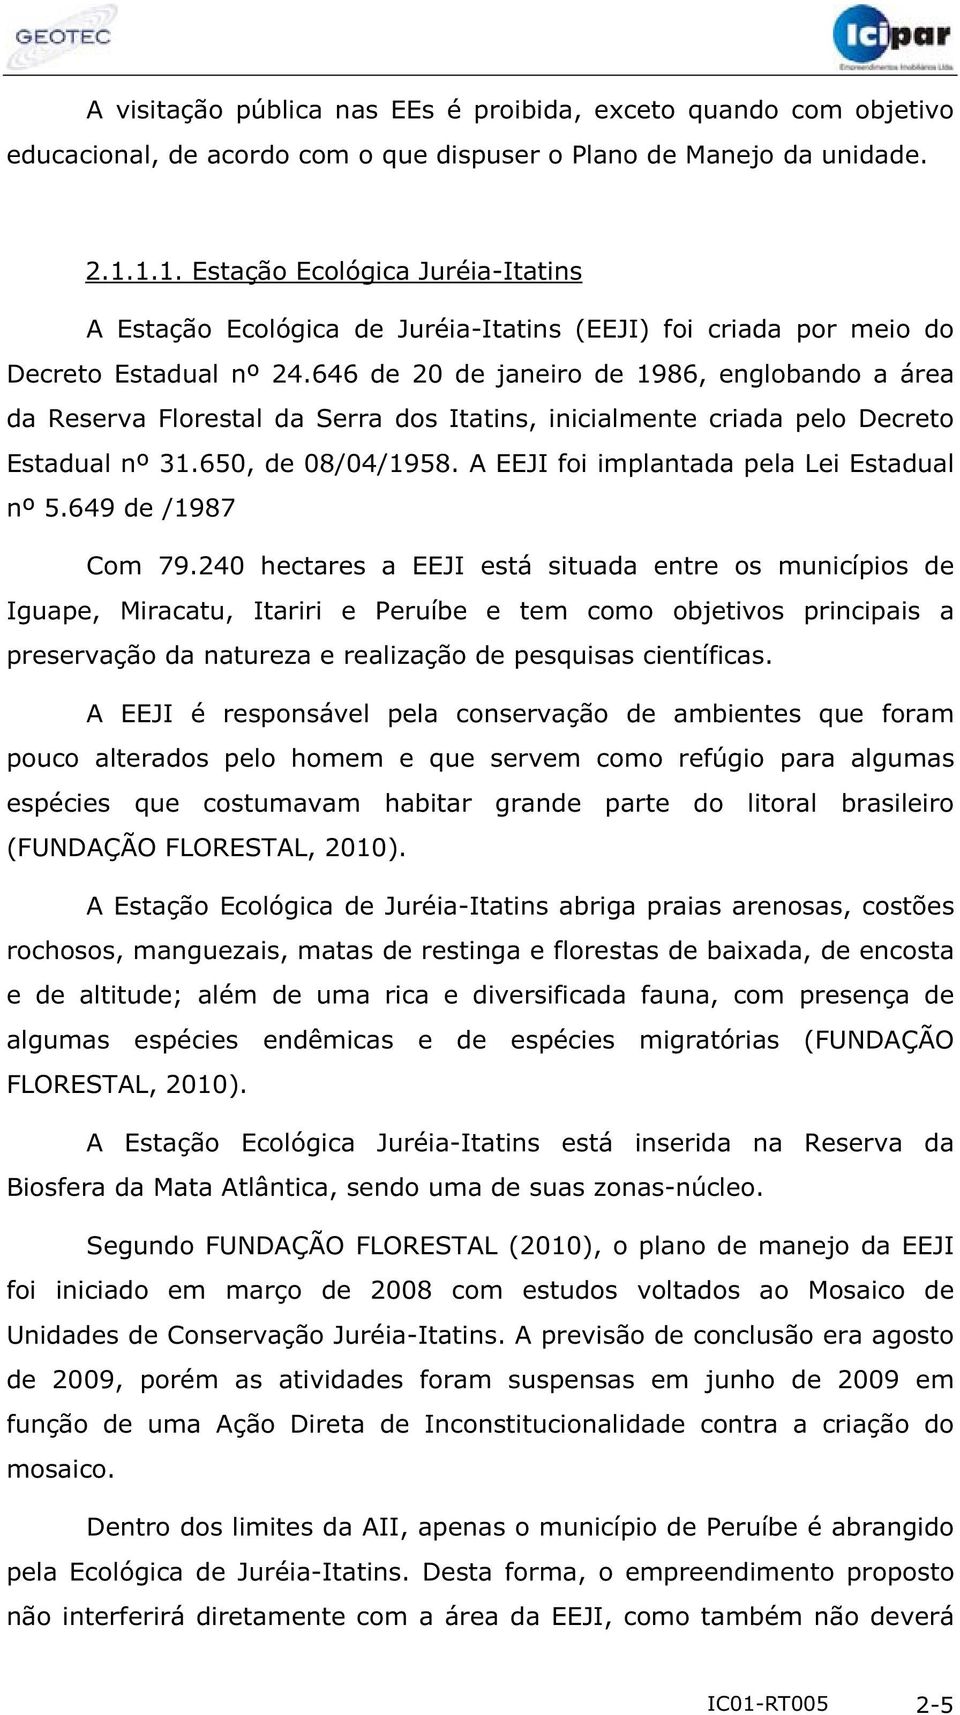 646 de 20 de janeiro de 1986, englobando a área da Reserva Florestal da Serra dos Itatins, inicialmente criada pelo Decreto Estadual nº 31.650, de 08/04/1958.